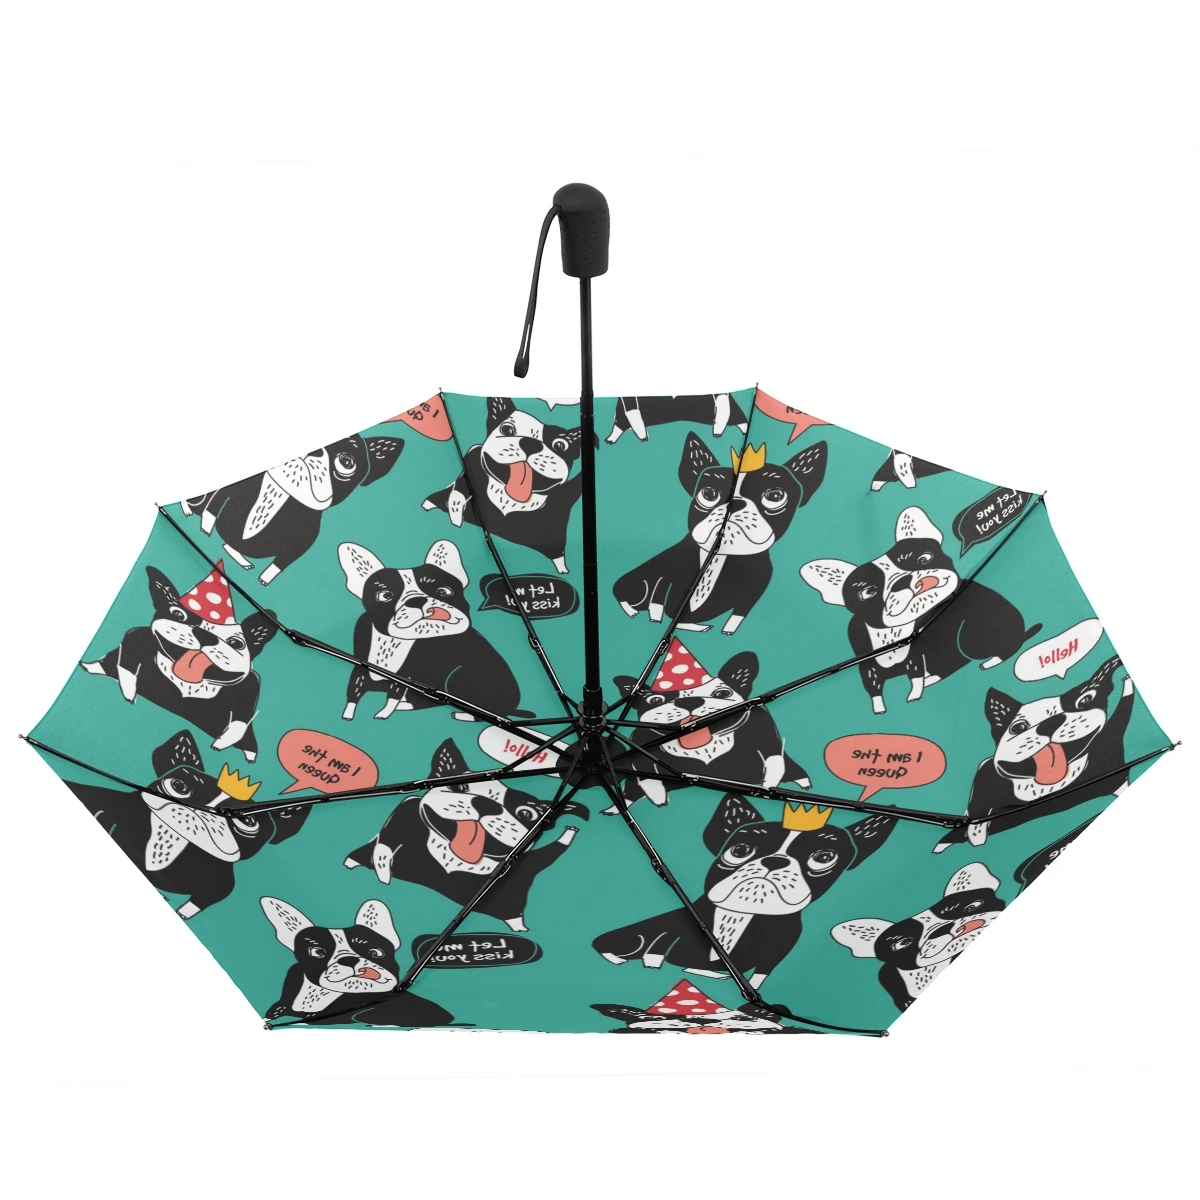 Зонт с французским бульдогом, автоматический женский зонт, ветрозащитный, три складных зонта Happy Dog, Зонт от дождя для женщин и мужчин, индивидуальный